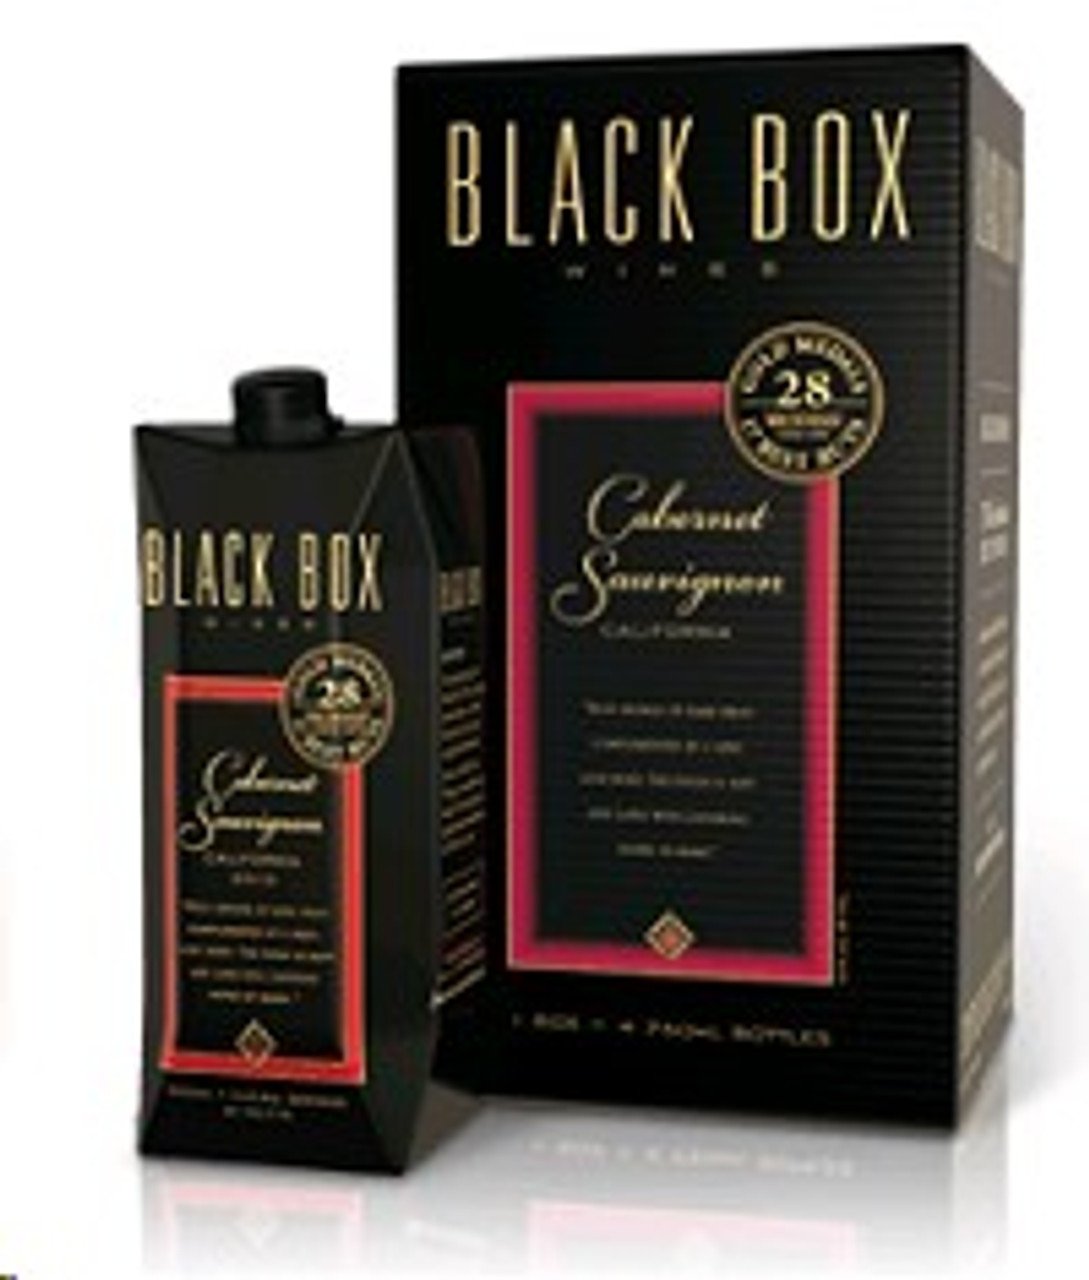 Black Box Cabernet Sauvignon 3L